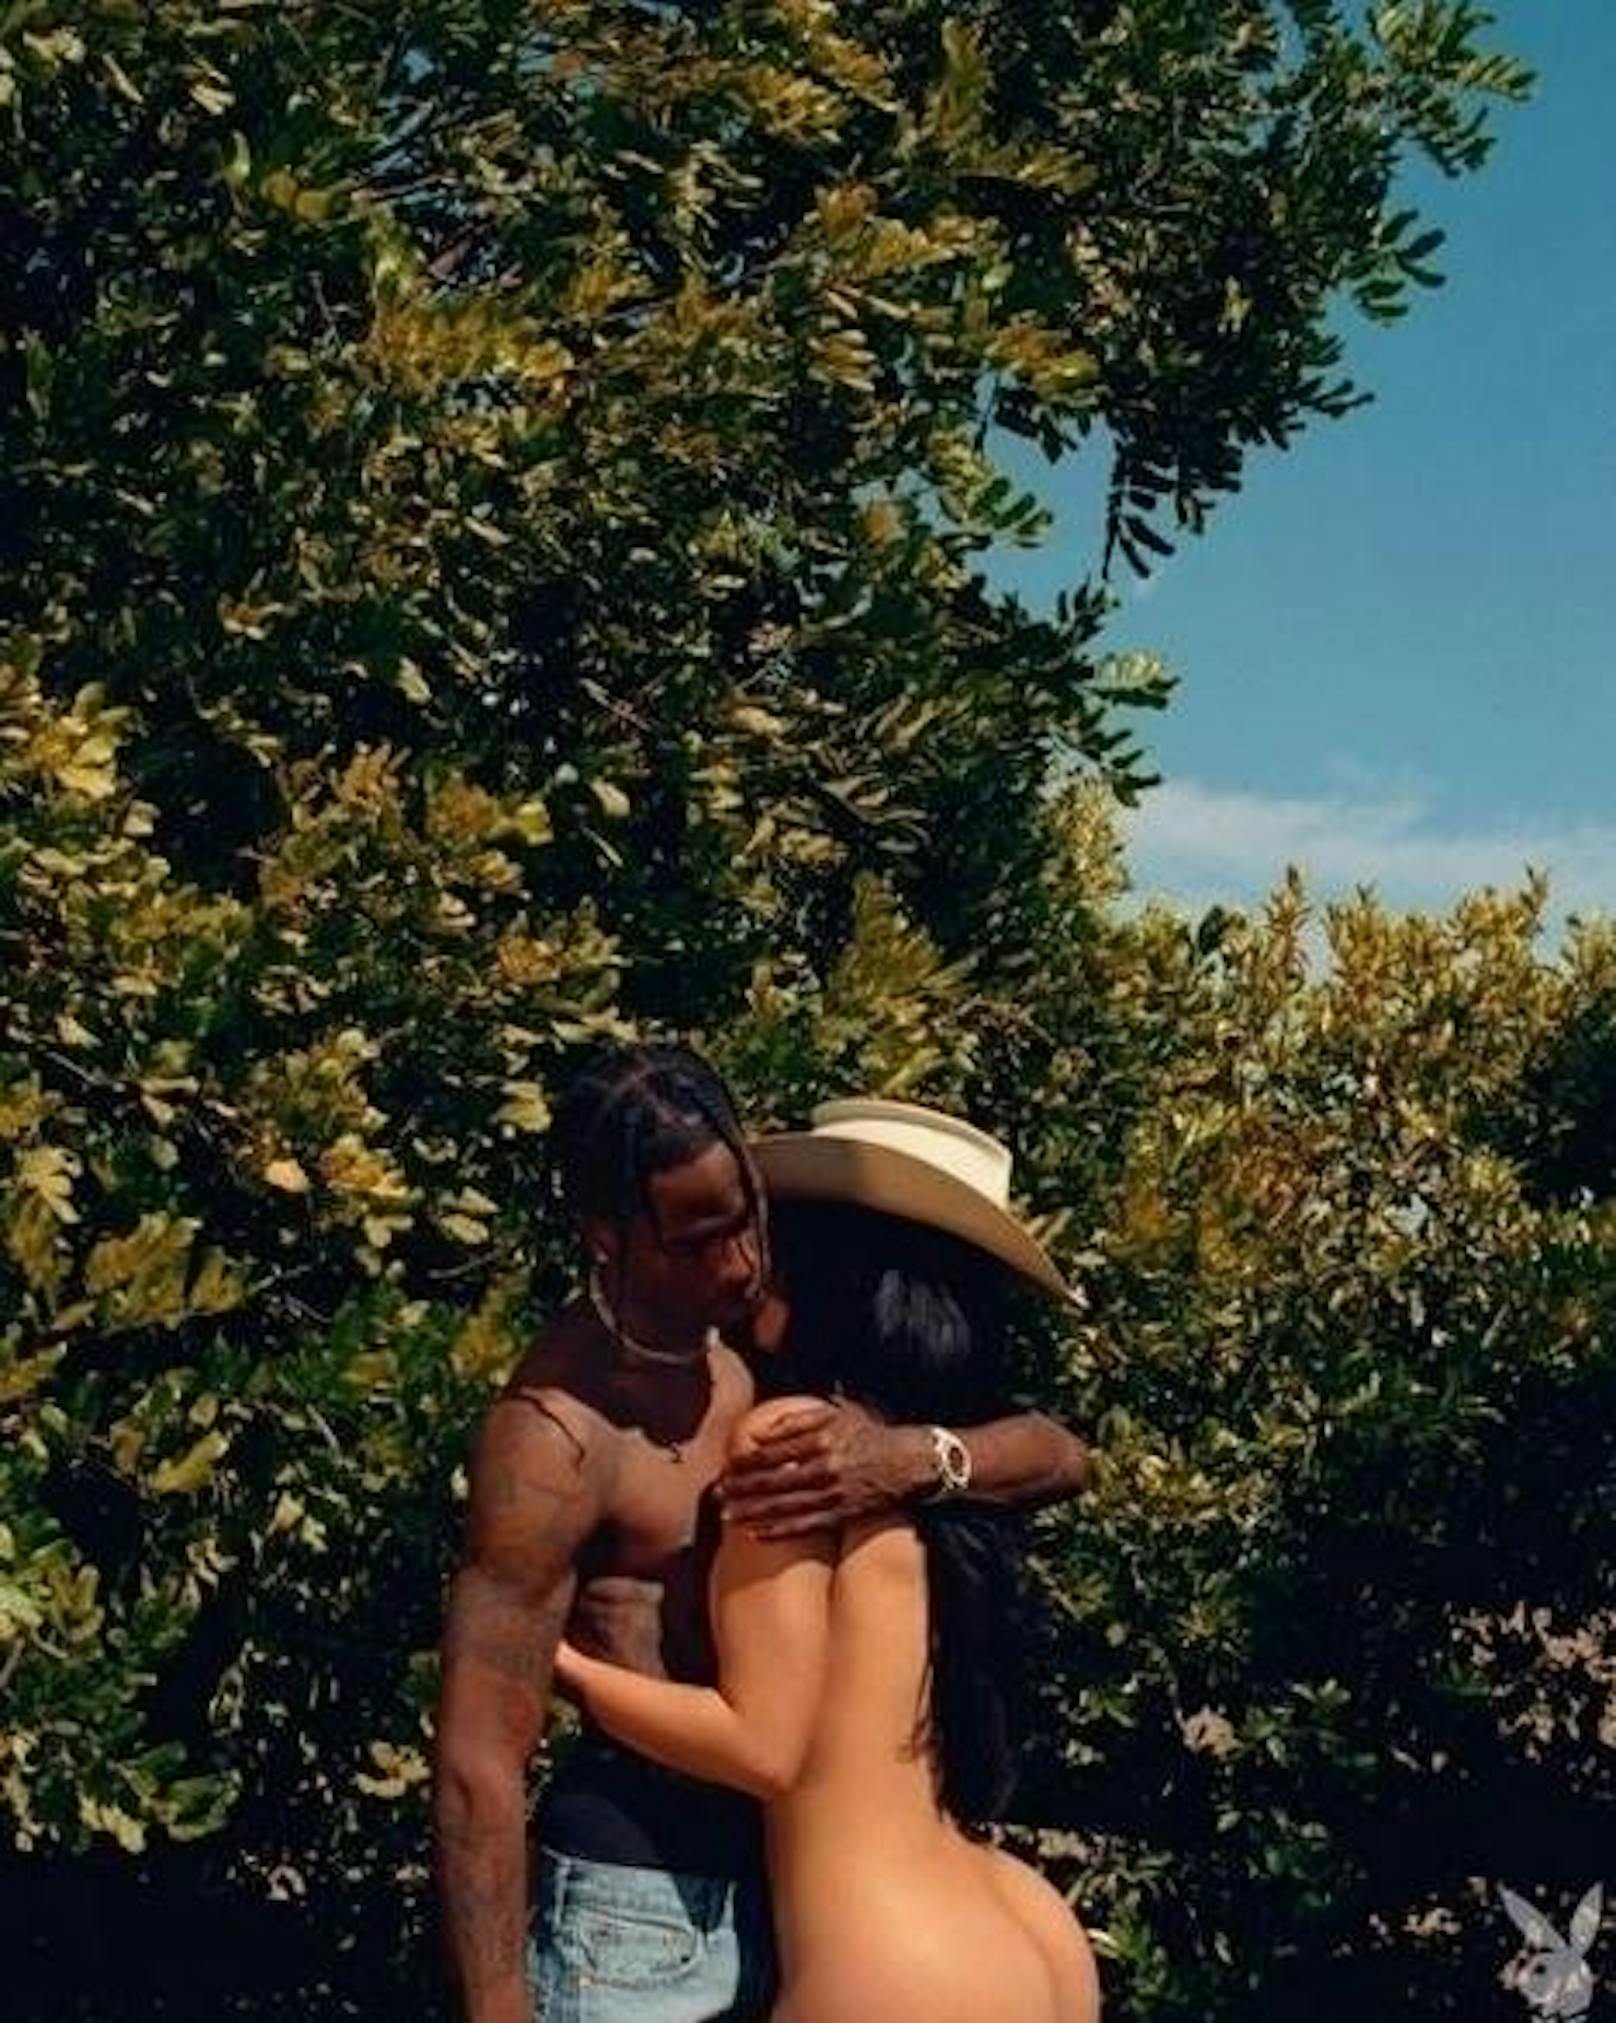 11.09.2019: Kylie Jenner zieht sich für den Playboy aus. Das hat die 22-Jährige auf Instagram mit diesem Bild verkündet, auf dem sie gemeinsam mit Freund Travis Scott zu sehen ist.